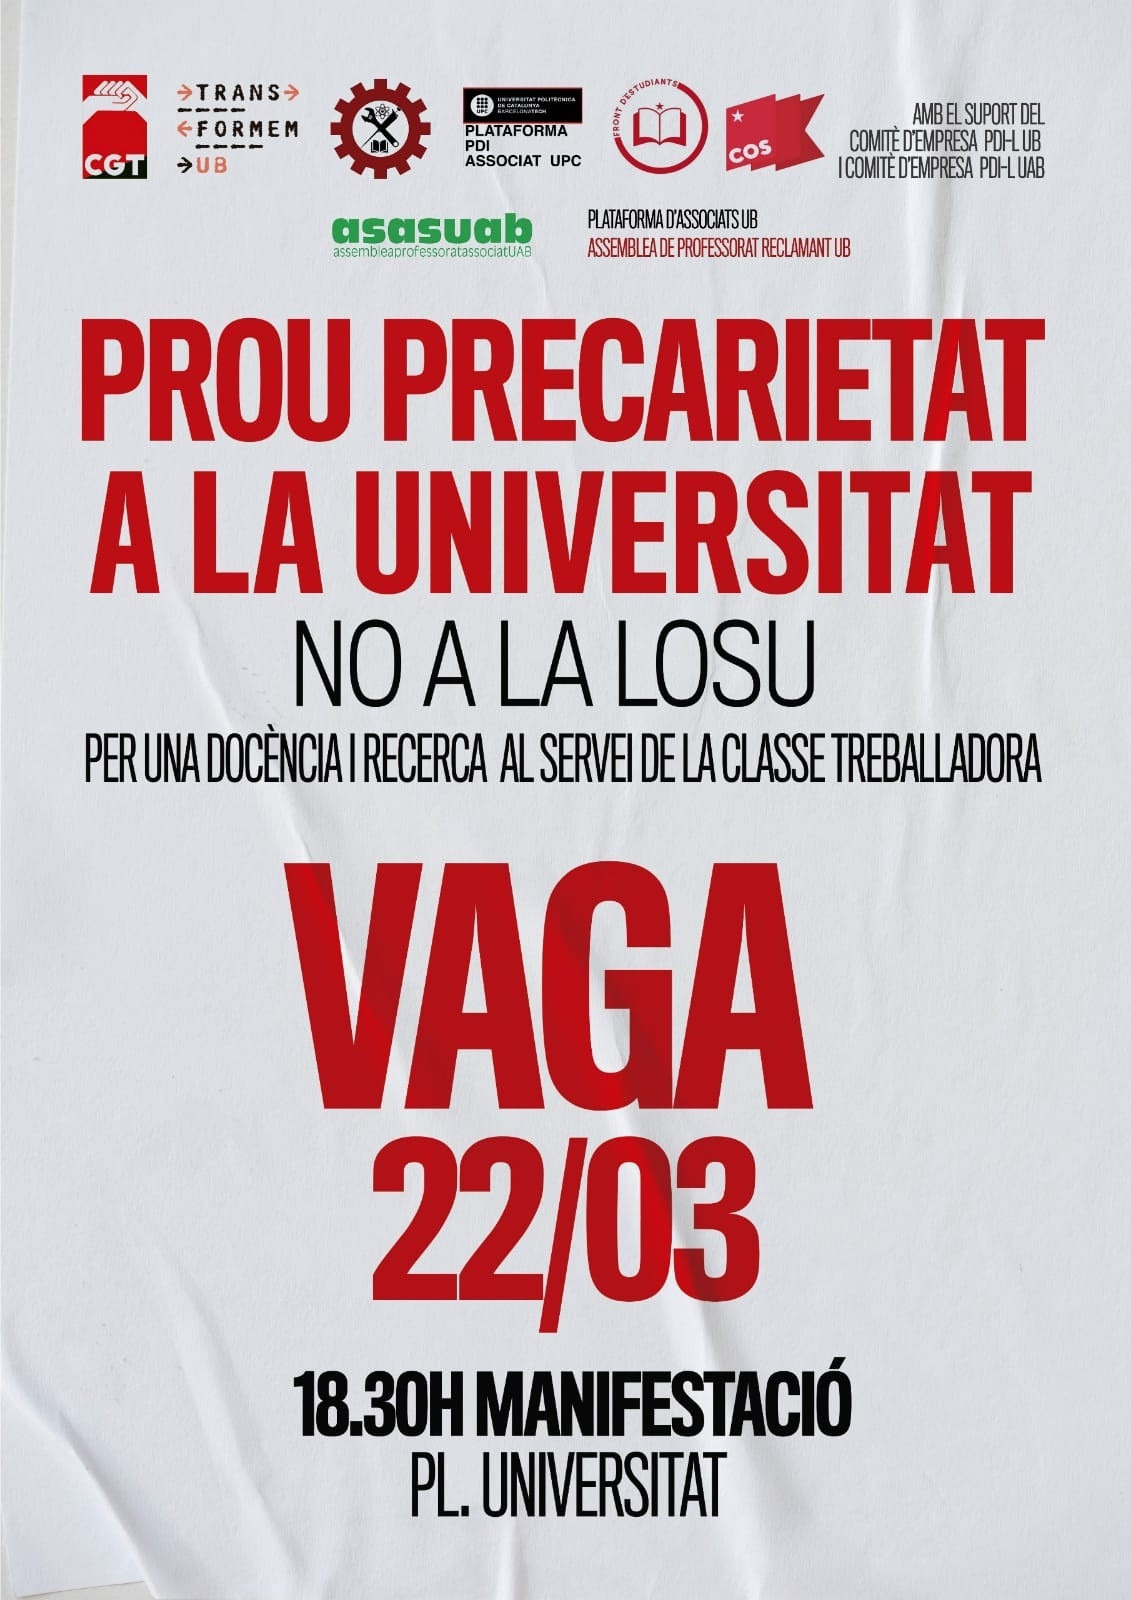 Cartel de la manifestación de profesores asociados de universidades en Barcelona en contra de la Ley Orgánica del Sistema Universitario (LOSU) / @PROFASSOCIATUAB